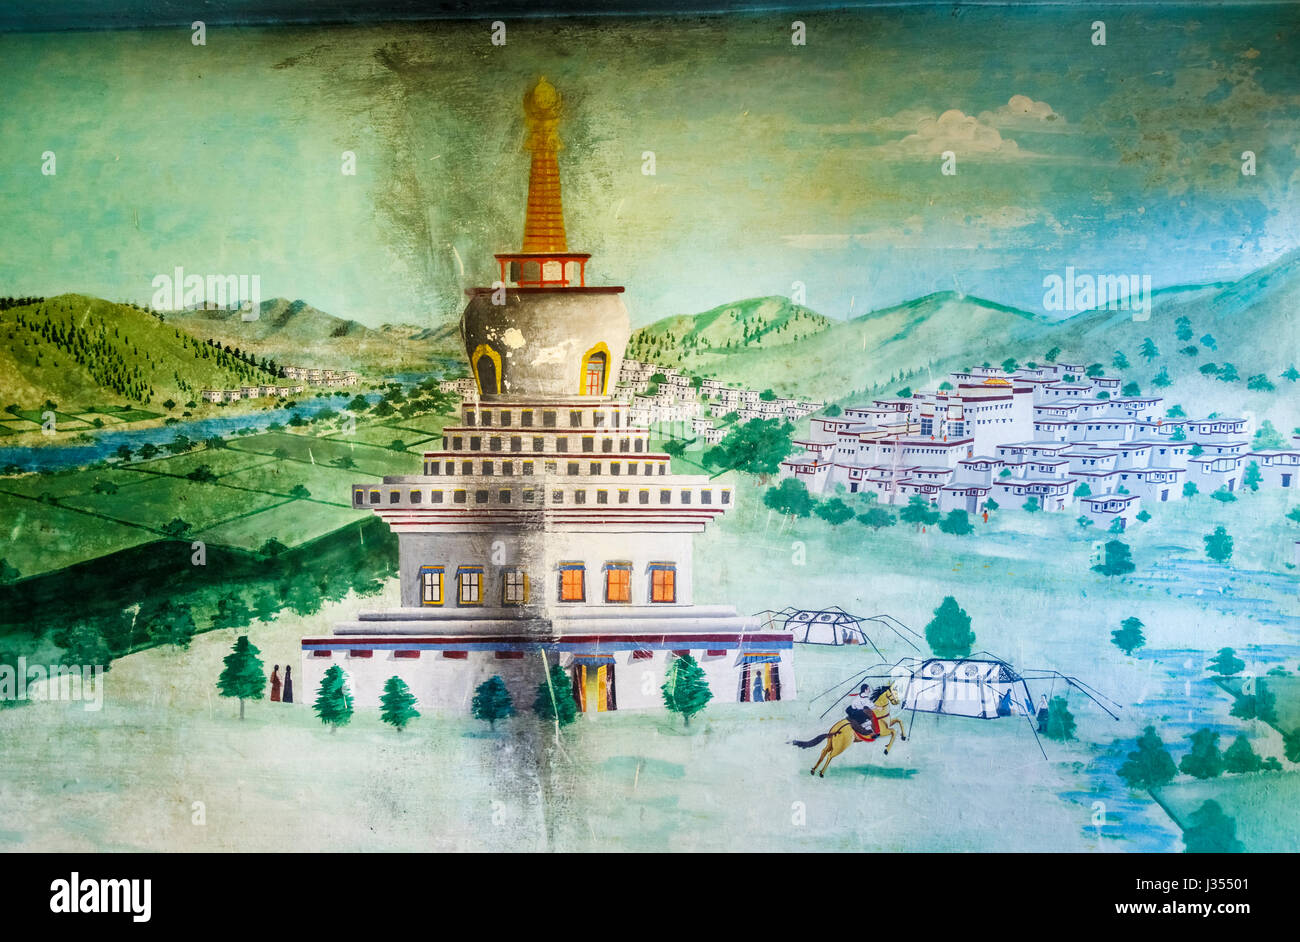 Beschädigte Wandmalerei im Chonor House Hotel, McLeodGanj, Dharamshala, Himachal Pradesh, Nordindien Darstellung traditionellen tibetischen Stadt und Gebäude Stockfoto